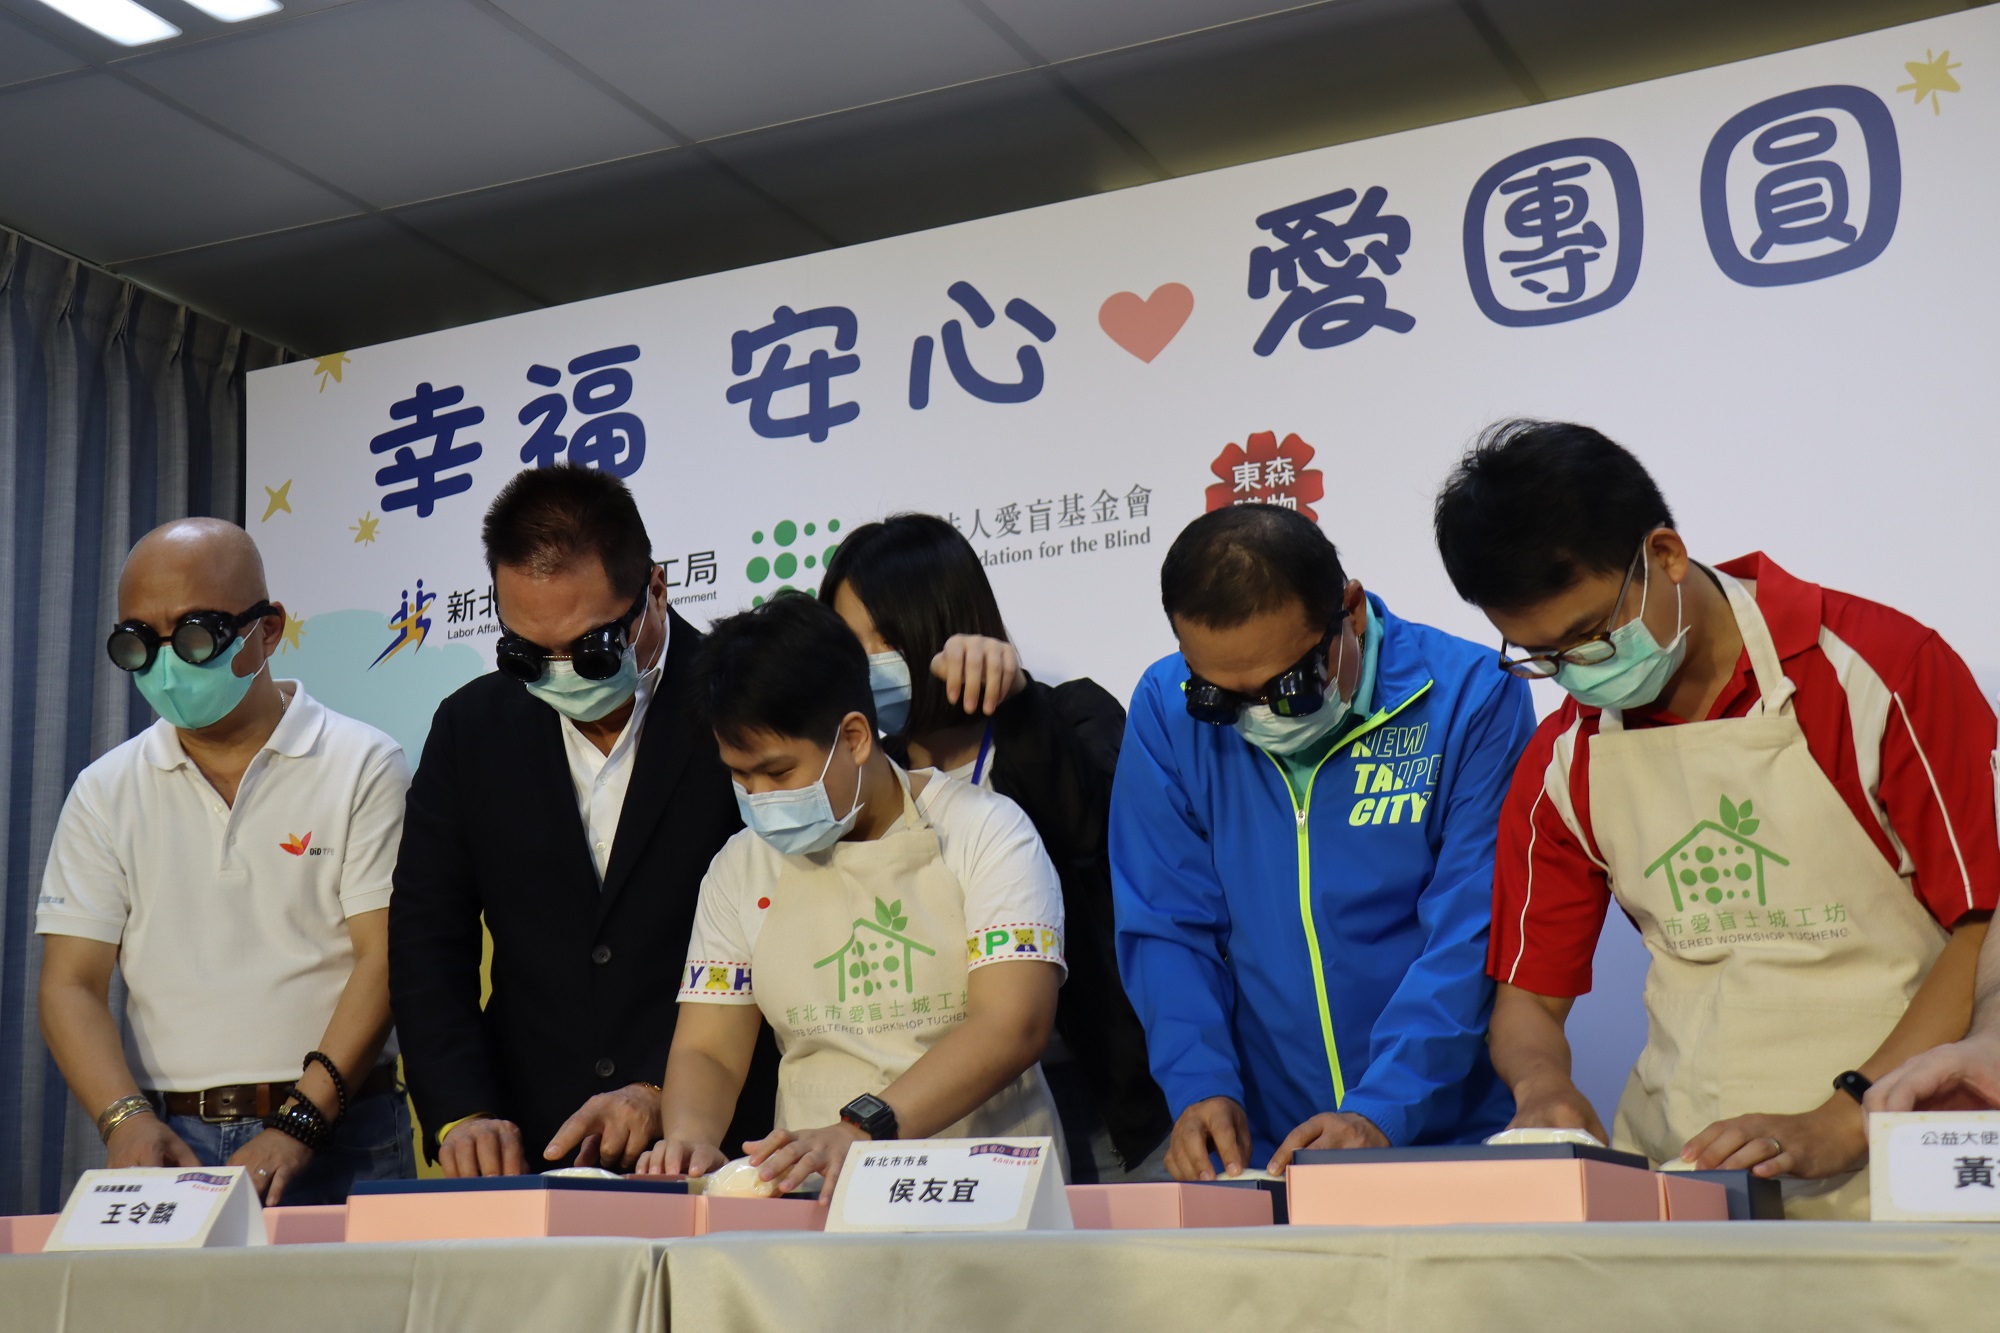 市長侯友宜(右2)、愛盲董事長謝邦俊(左1)、東森總裁王令麟戴(左2)視障模擬眼鏡體驗手工